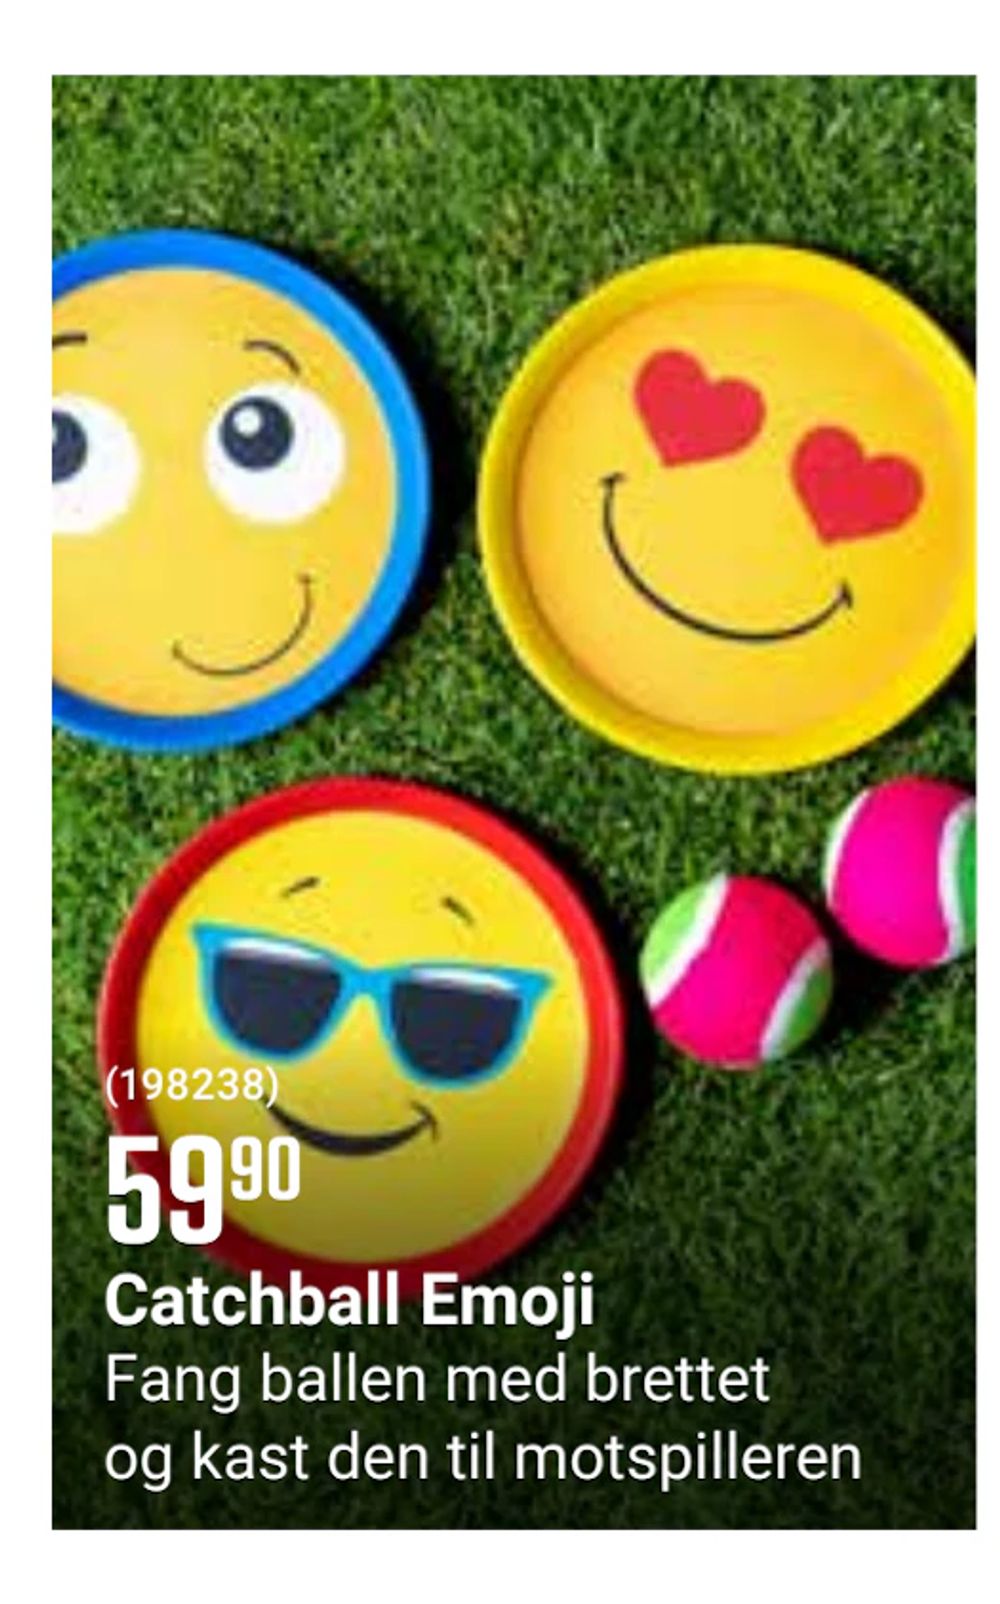 Tilbud på Catchball Emoji fra Europris til 59,90 kr